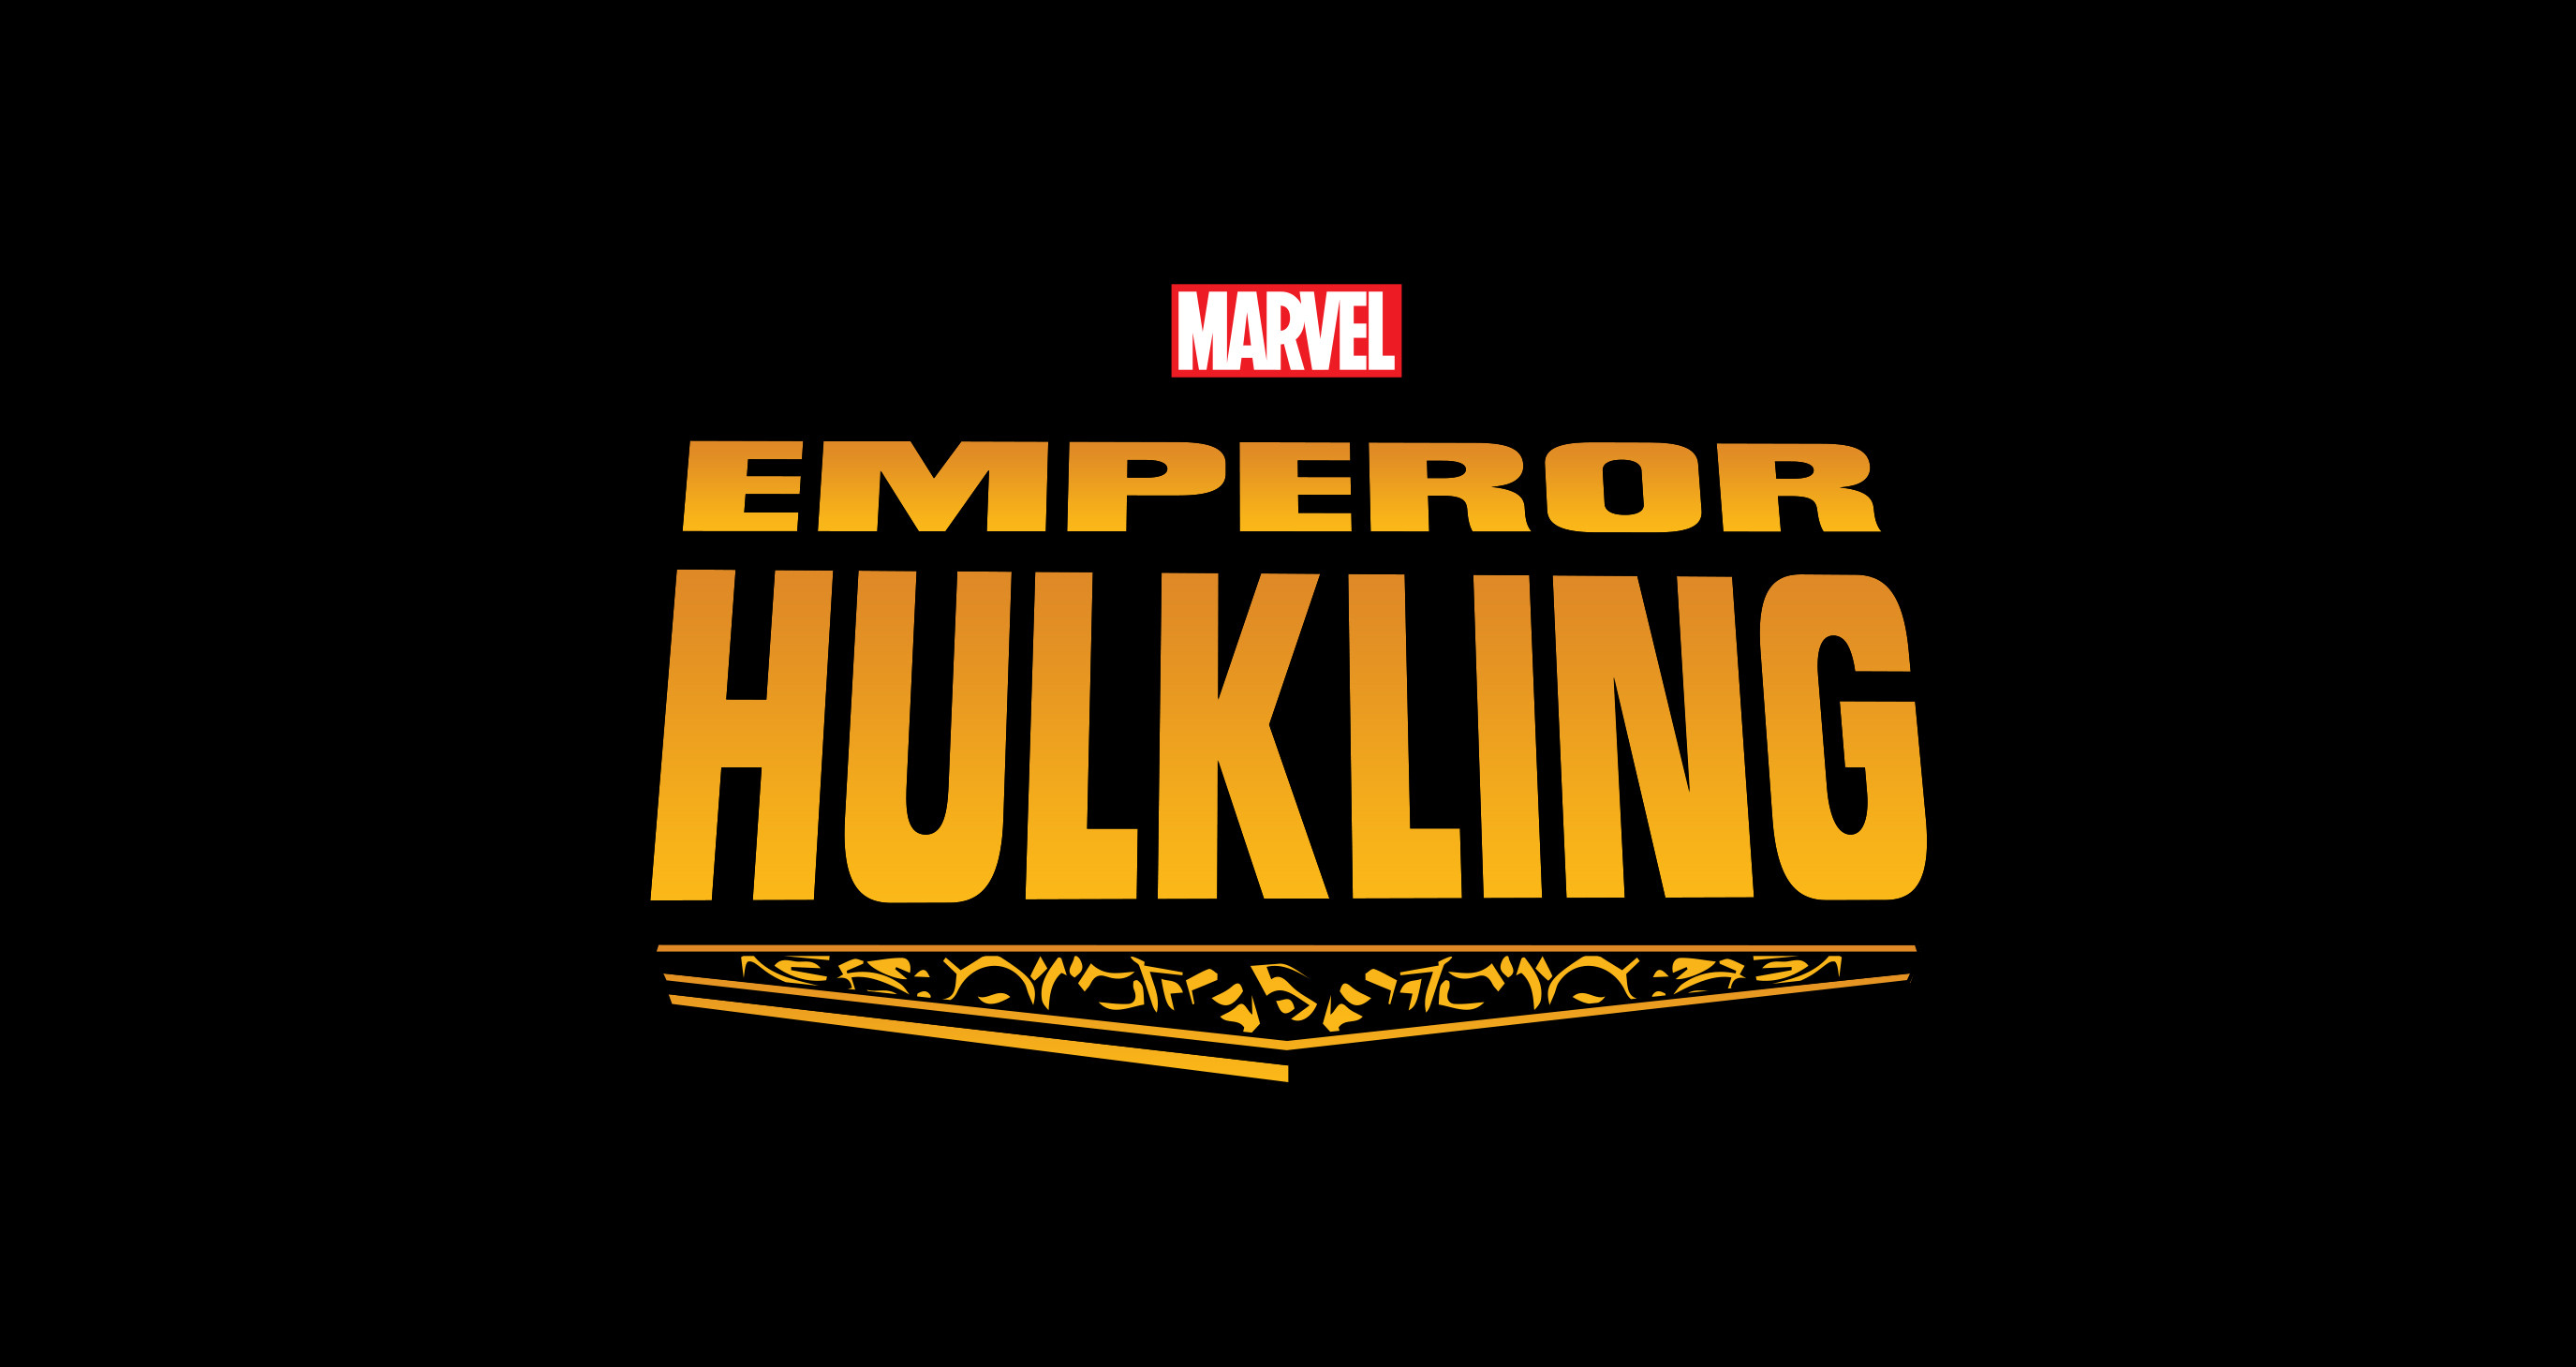 Marvel's Emperor Hulkling Logo Design.  Published by Marvel Entertainment